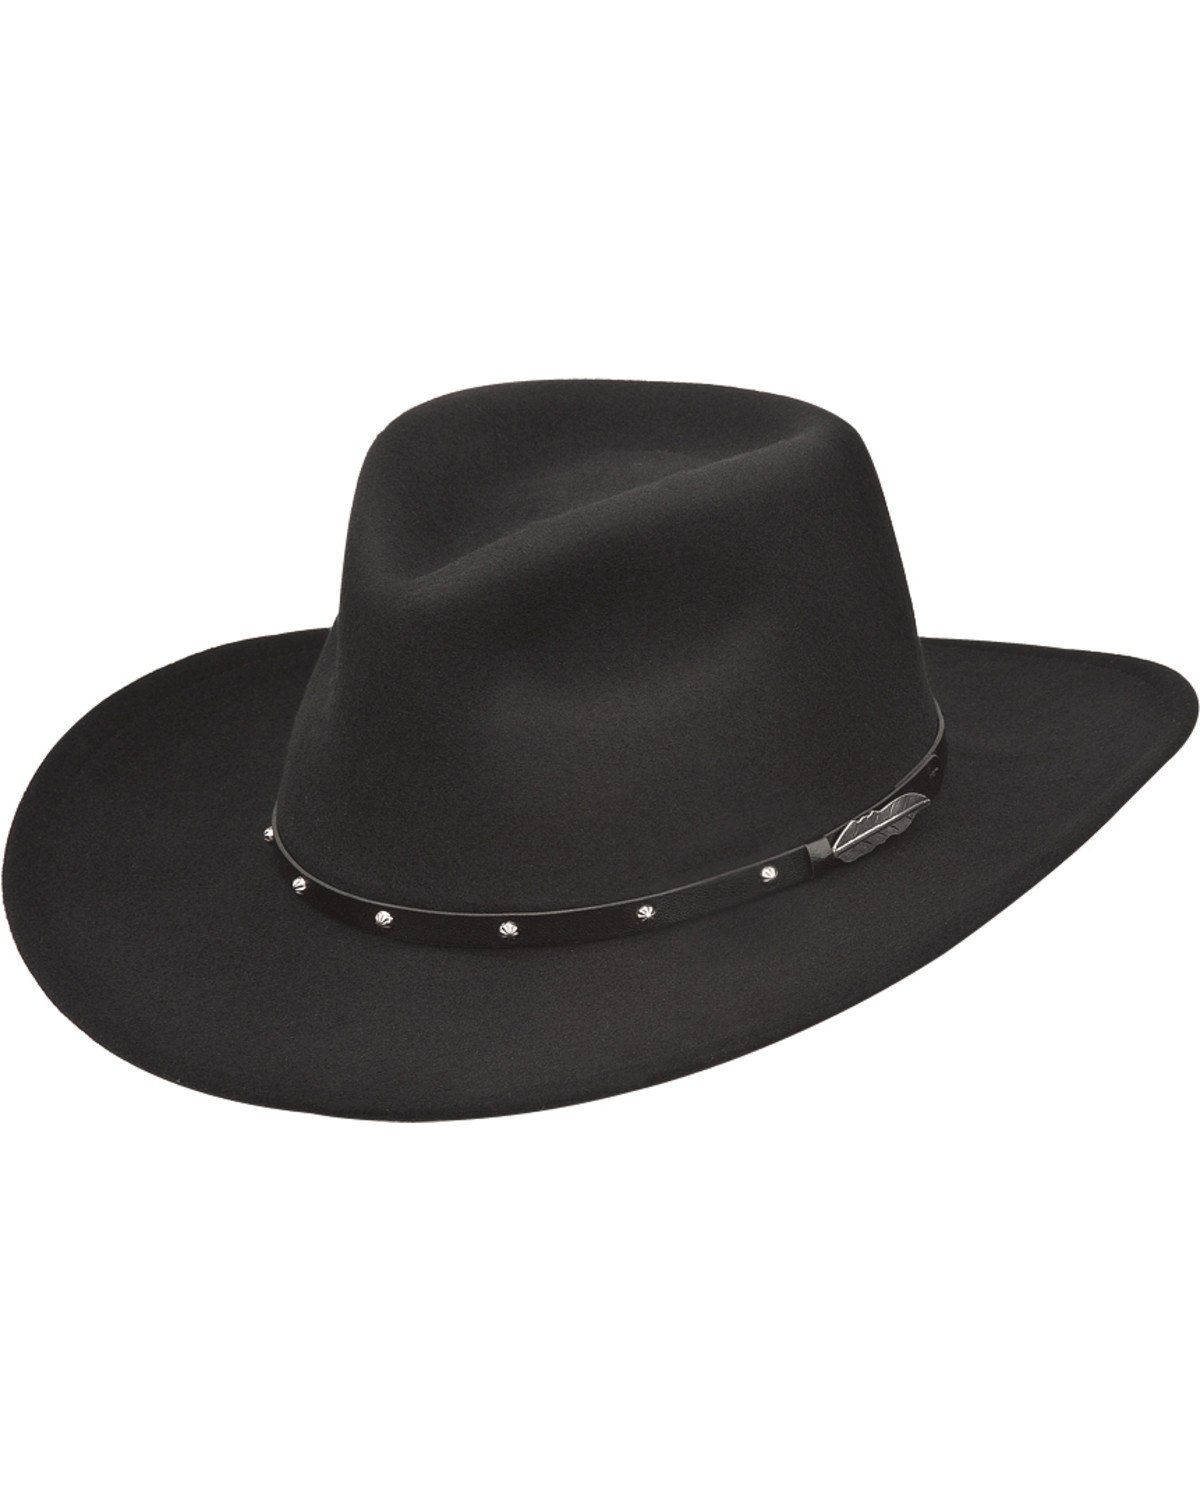 Black Creek Men's Feather Concho Felt Western Fashion Hat